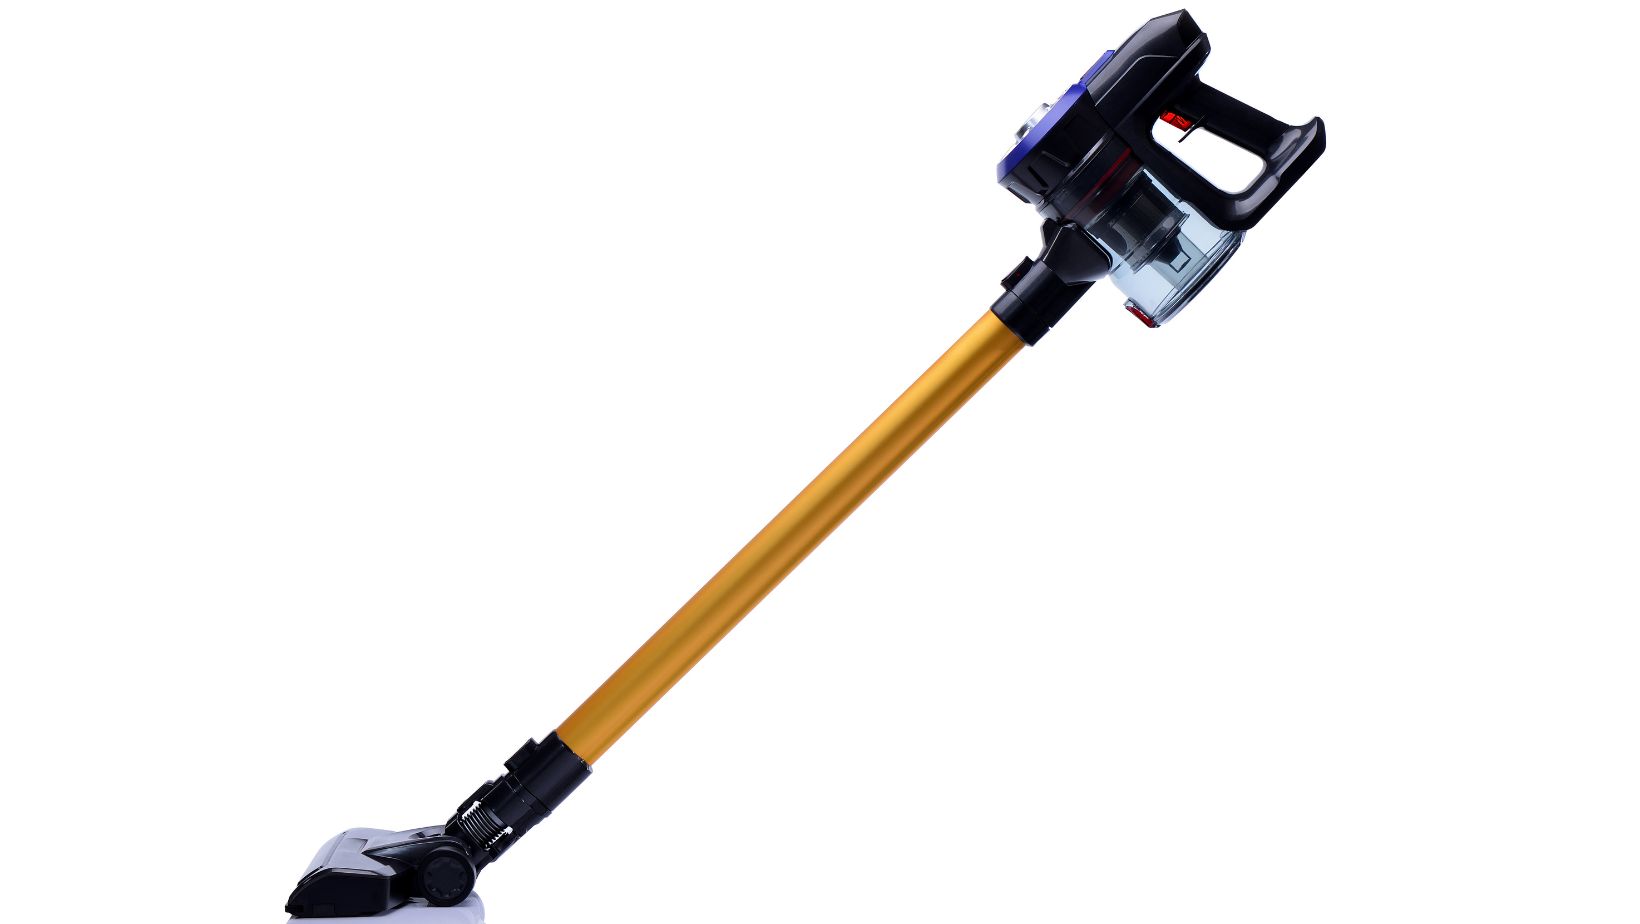 Shark Wandvac Stick Vacuum - An Efficient Cleaning Solution